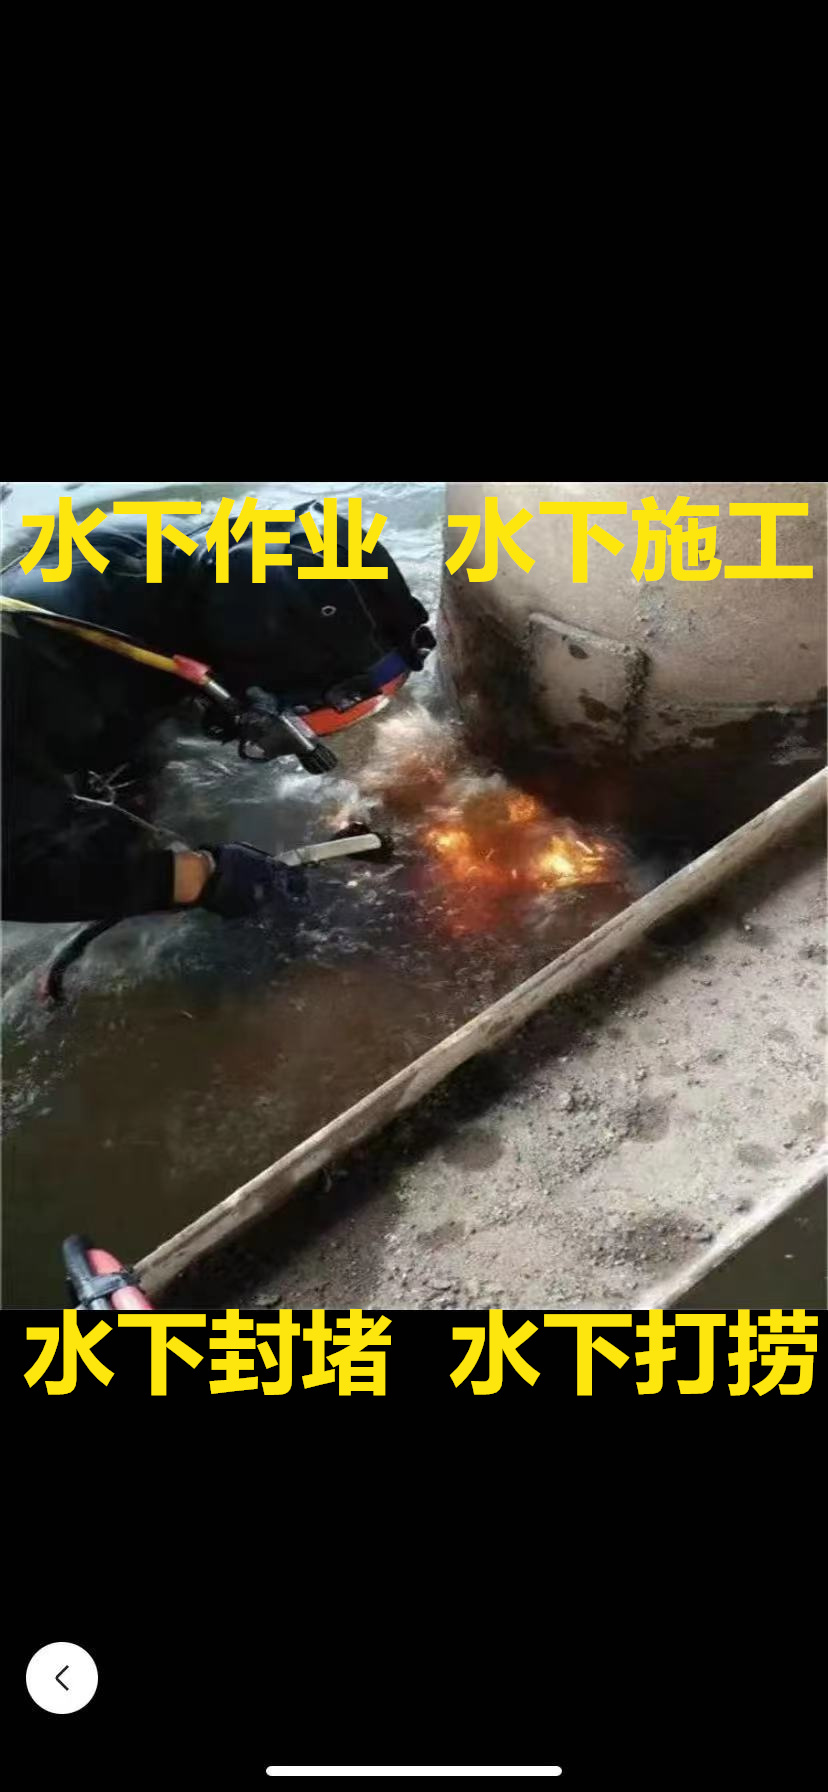 北京蛙人打捞贵重物品